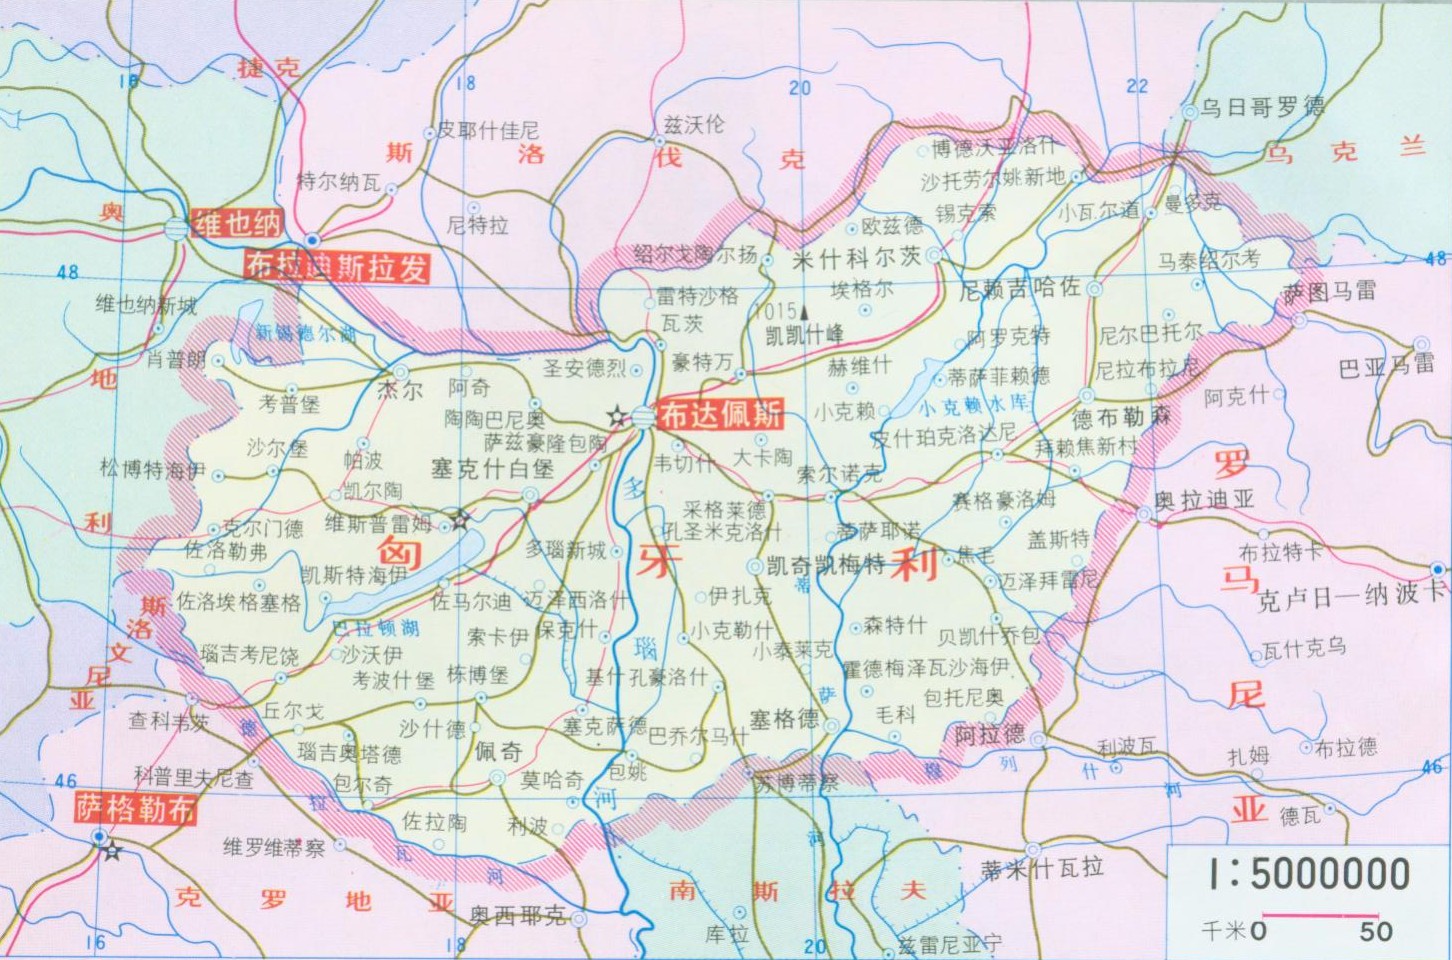 tesco térkép magyarország Szerintem Kiskunfélegyháza el van írva   (kínai magyar térkép  tesco térkép magyarország